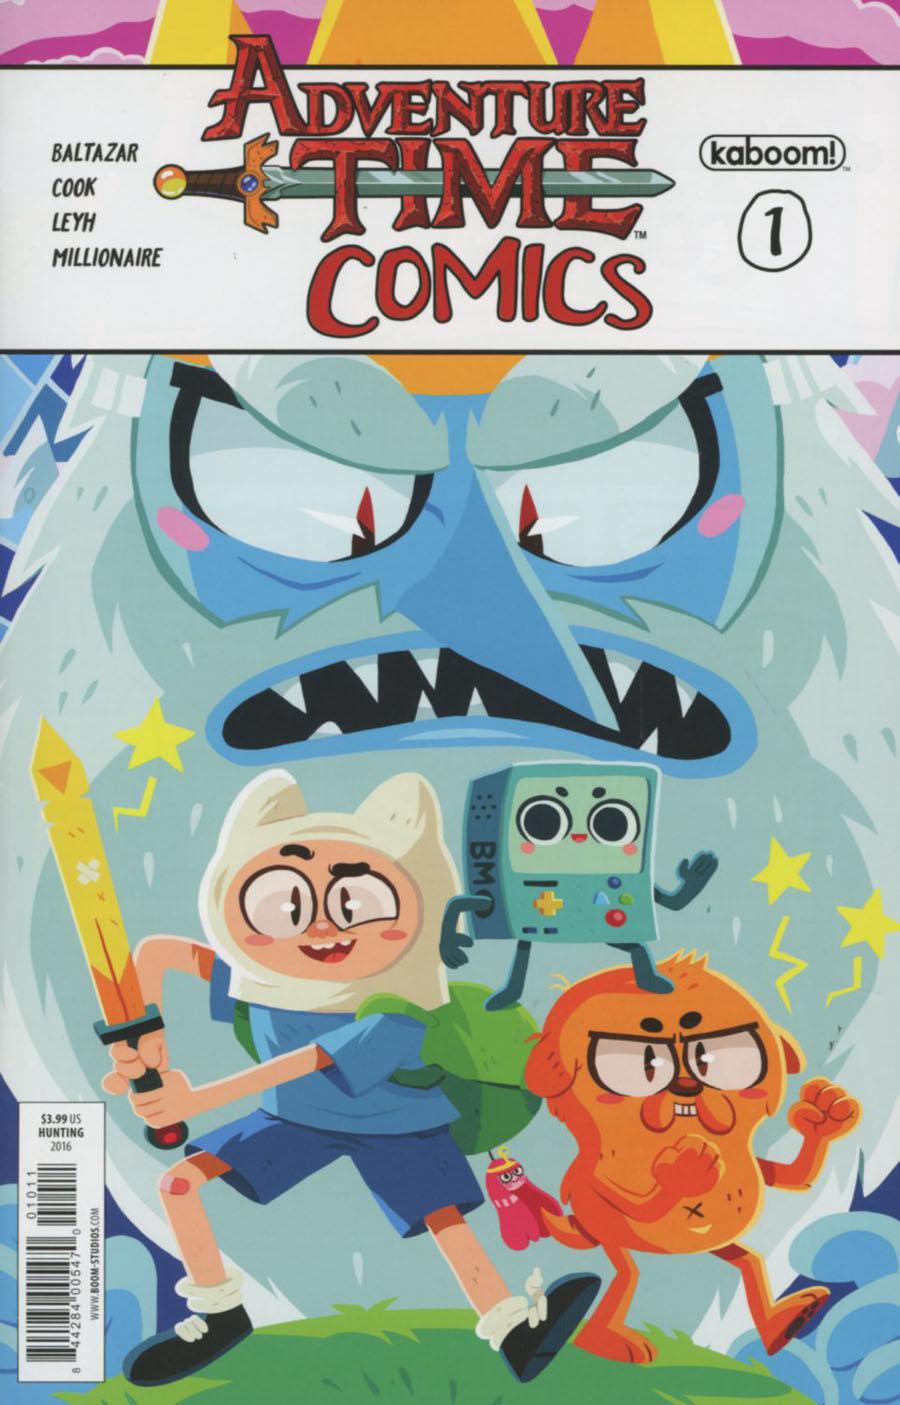 Adventure Time Comics Vol. 1 #1